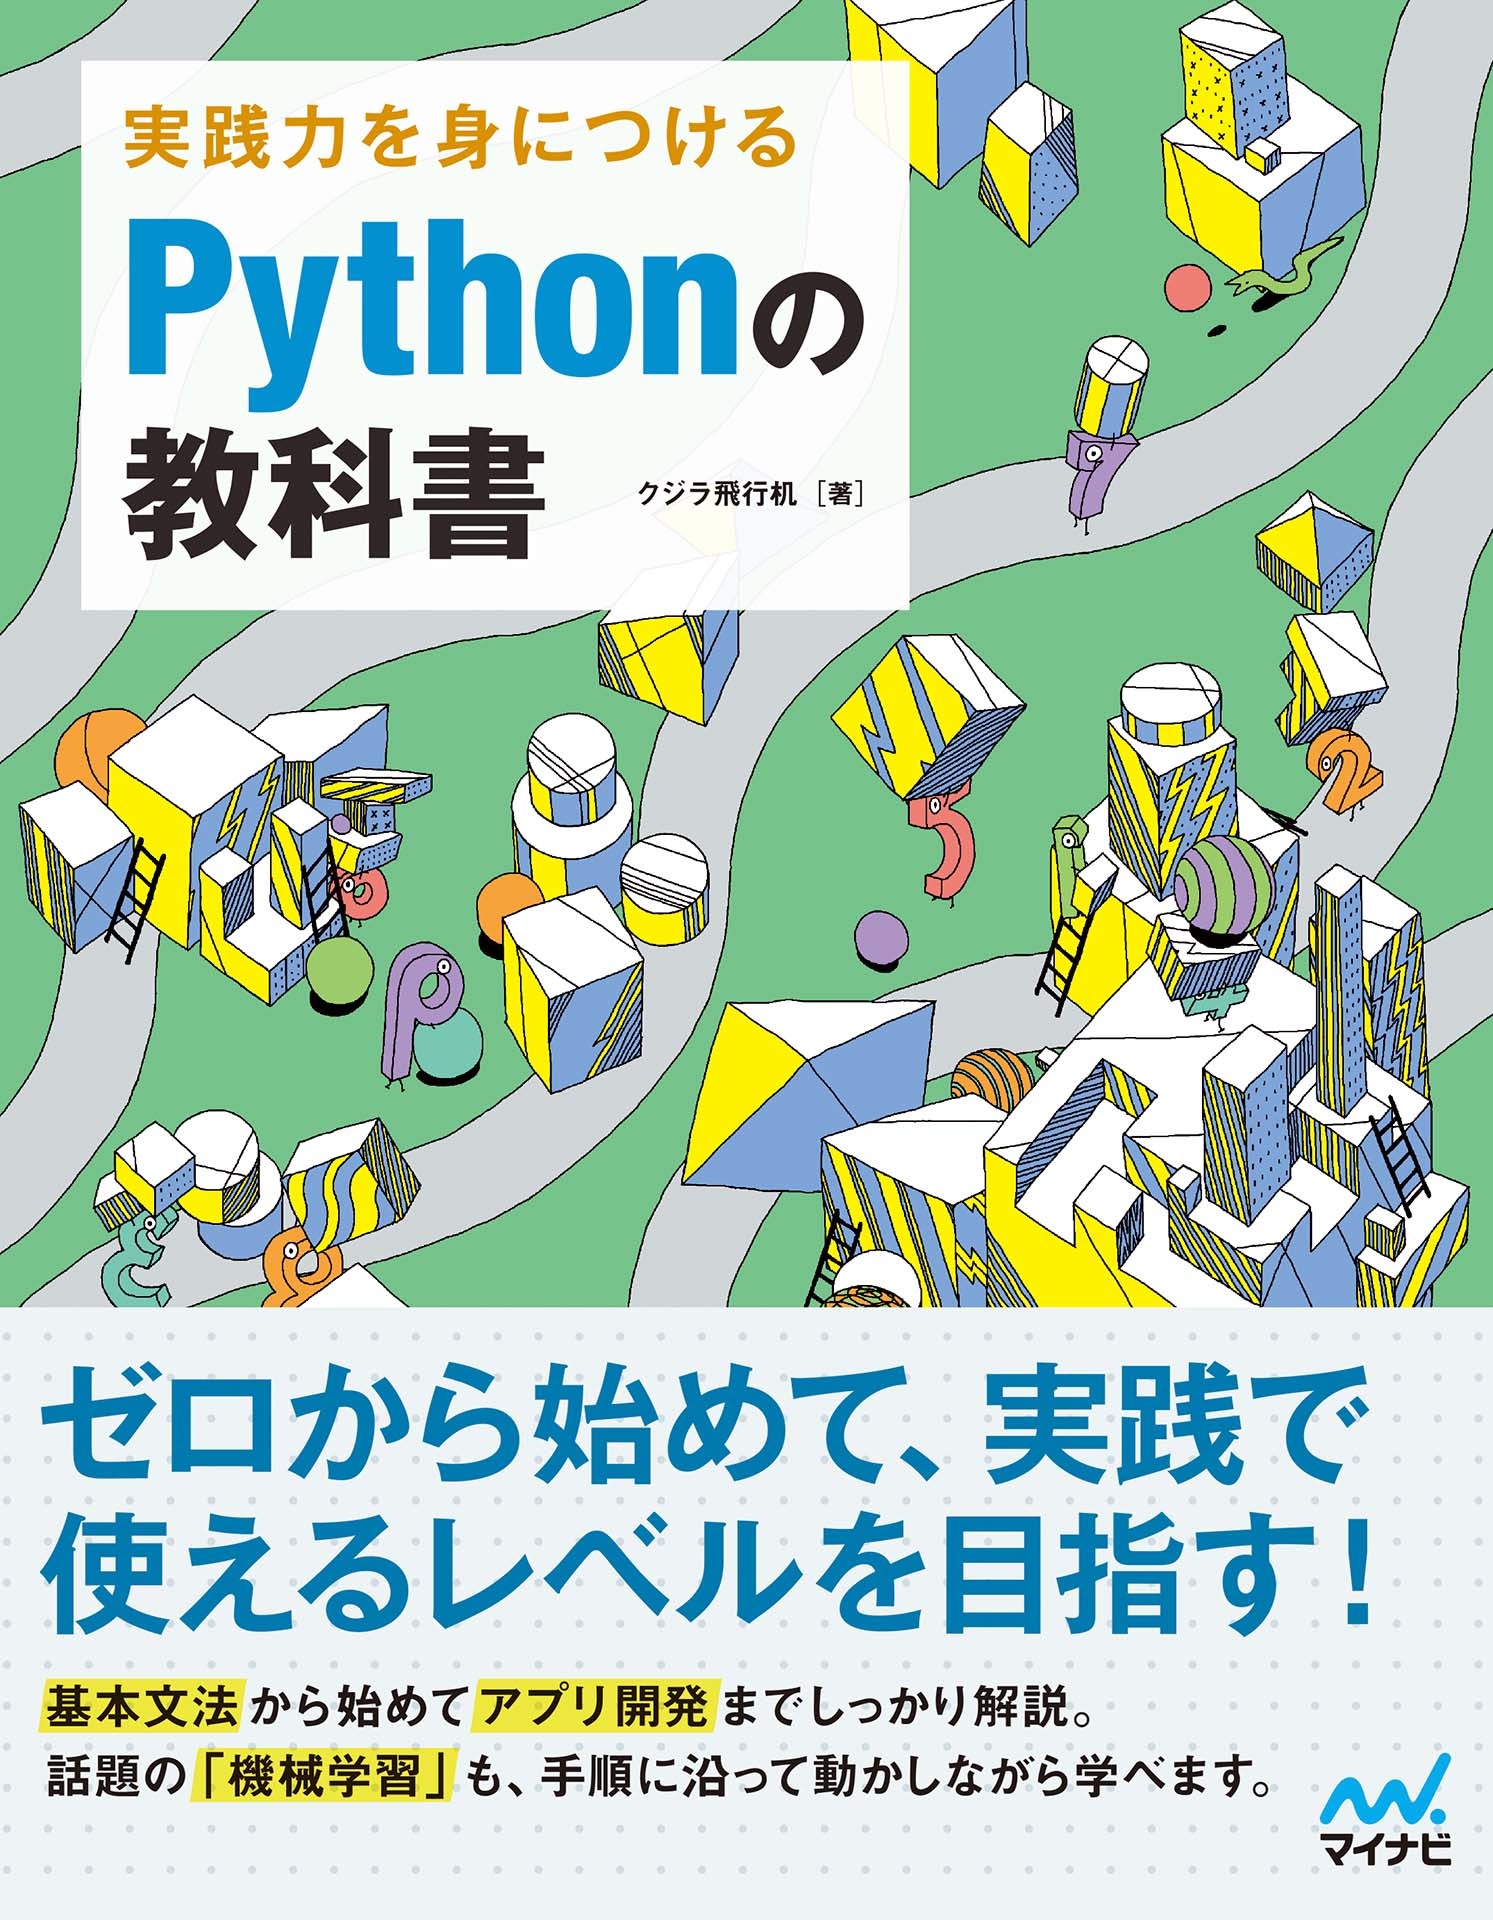 Python言語プログラミング講座を開講しました。